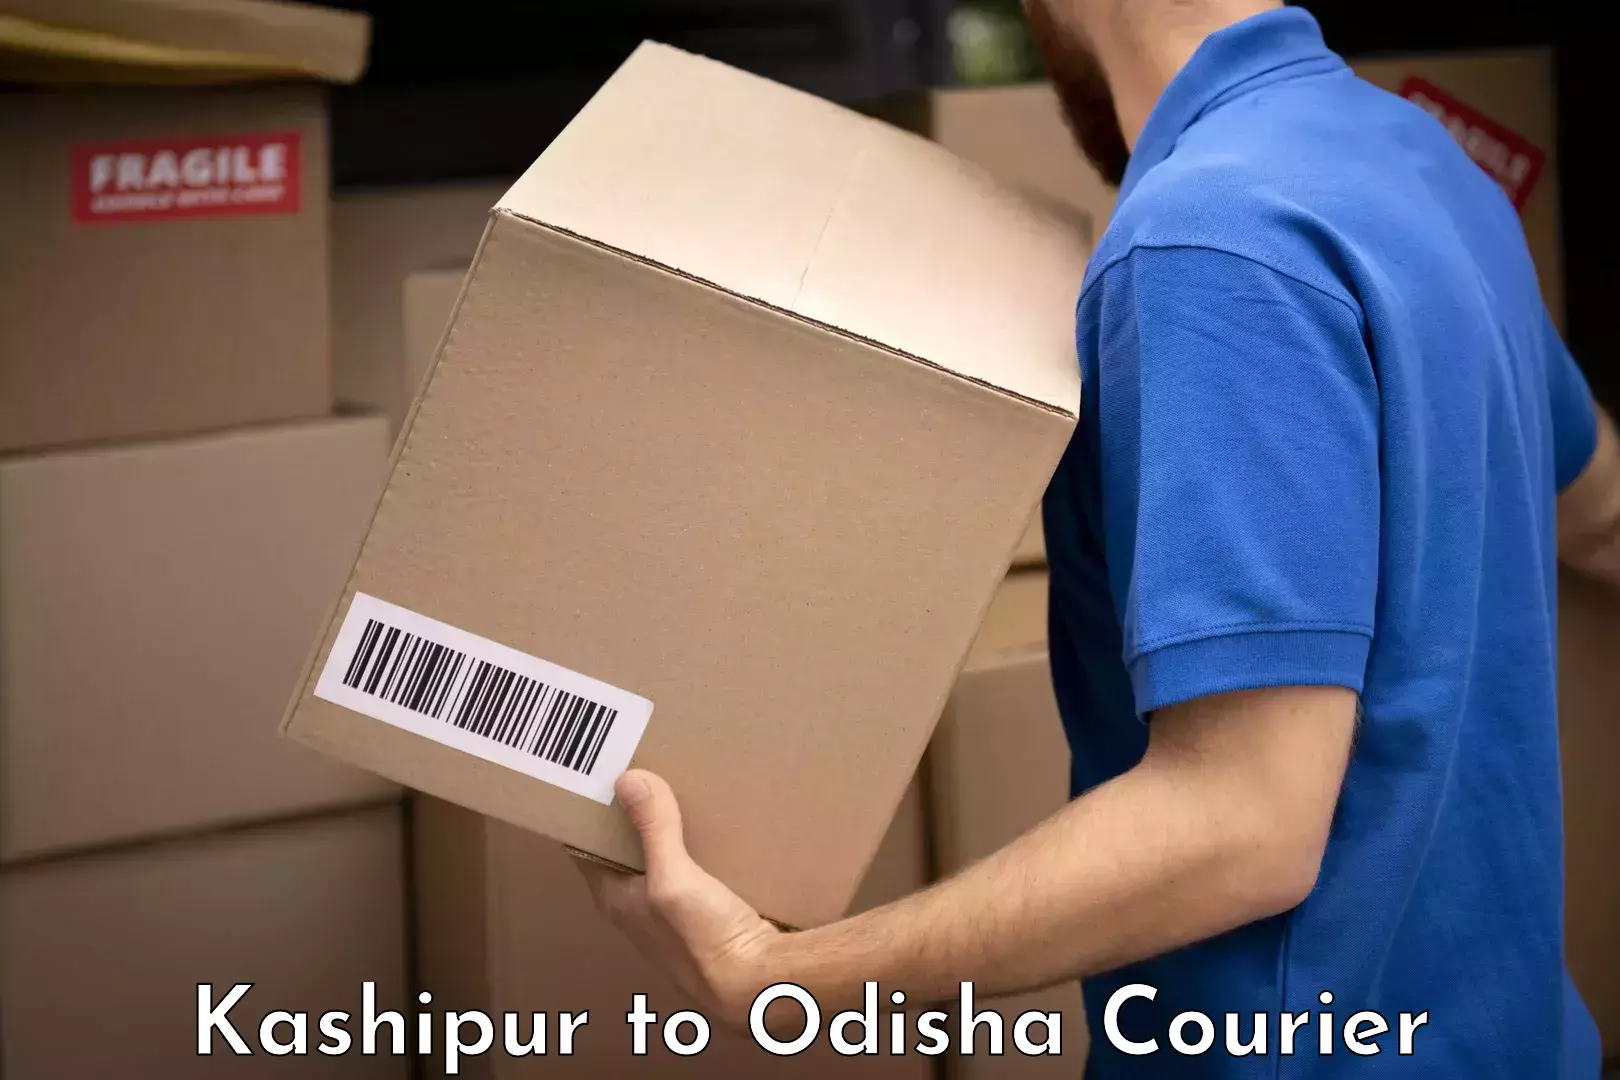 Baggage shipping experts Kashipur to Mathili